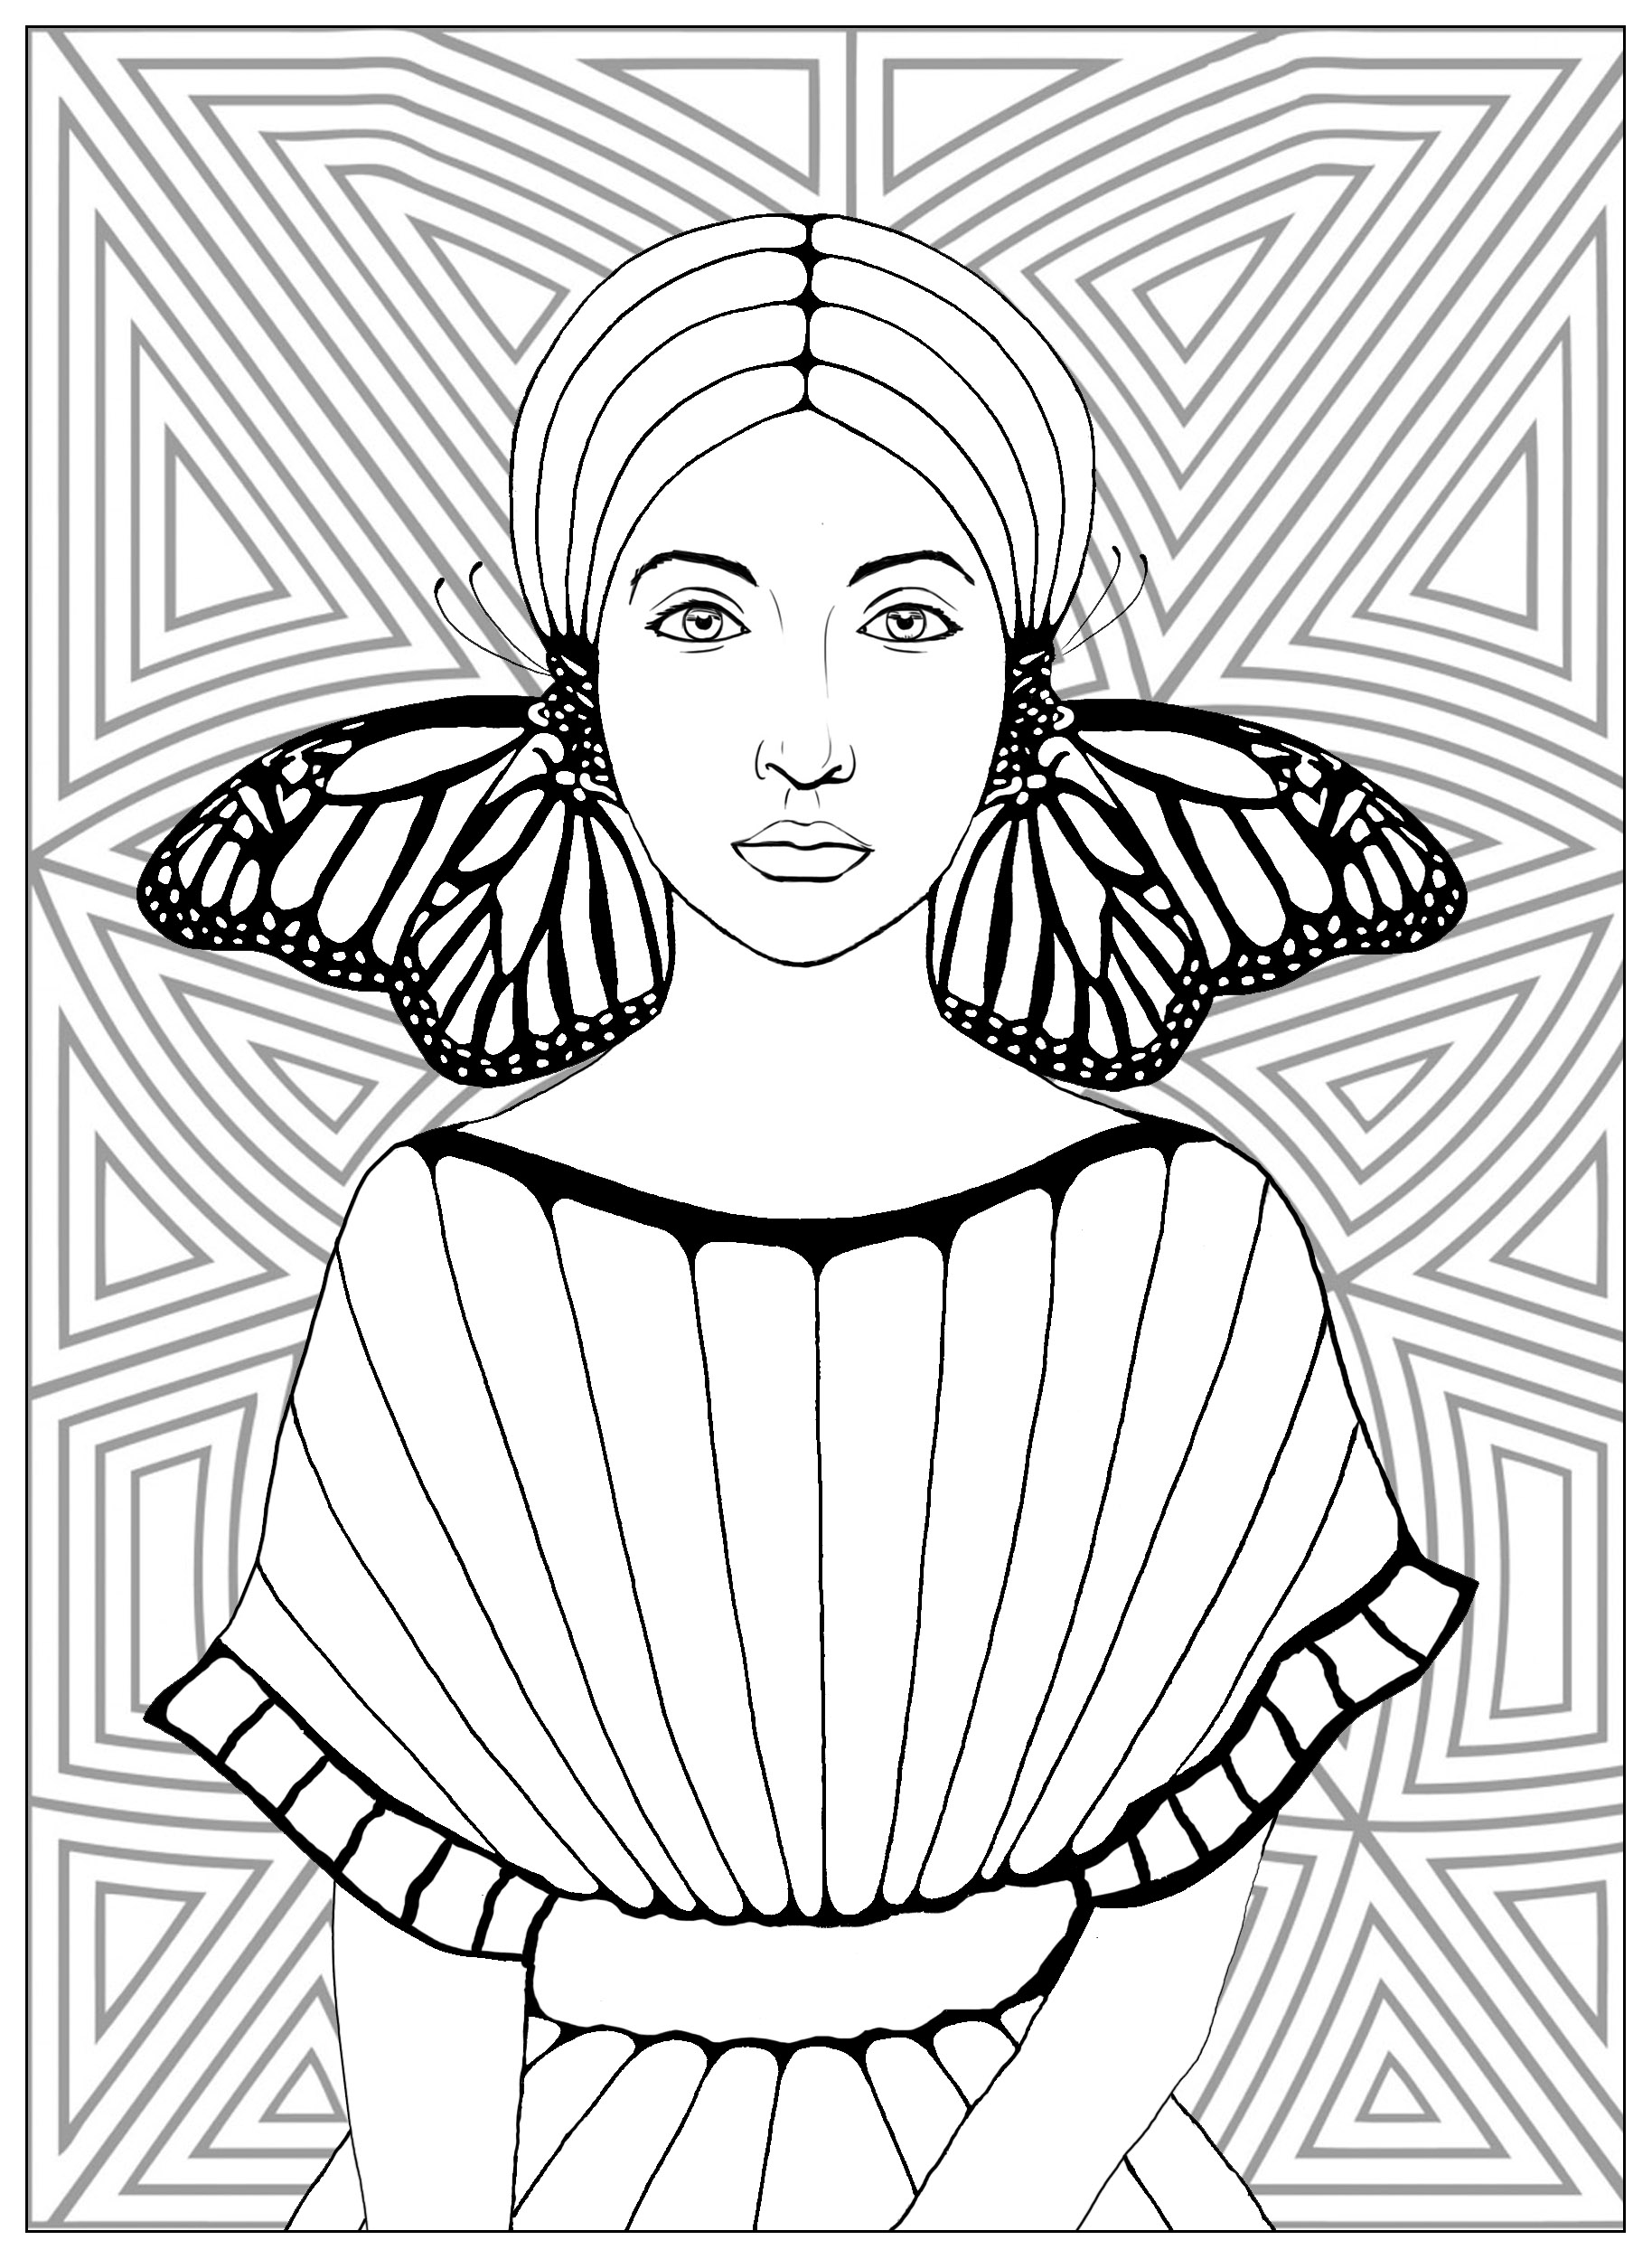 Frau mit Schmetterlingsflügeln in Ohrring, und schönen Hintergrund mit geometrischen Mustern